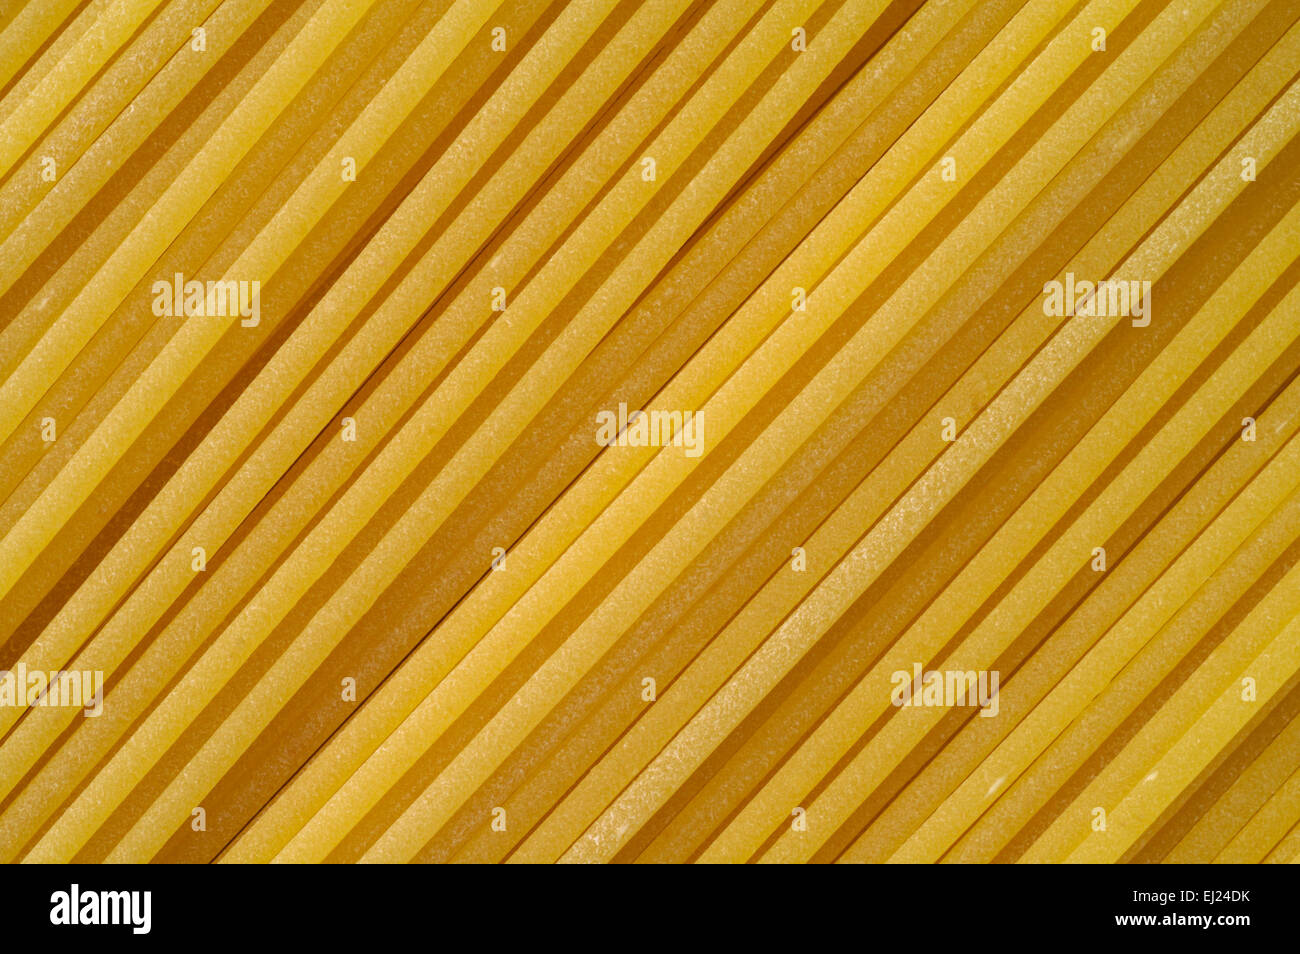 Premio spaghetti estrusi in bronzo. La superficie è opaca e irregolare invece di lucida e liscia. Foto Stock